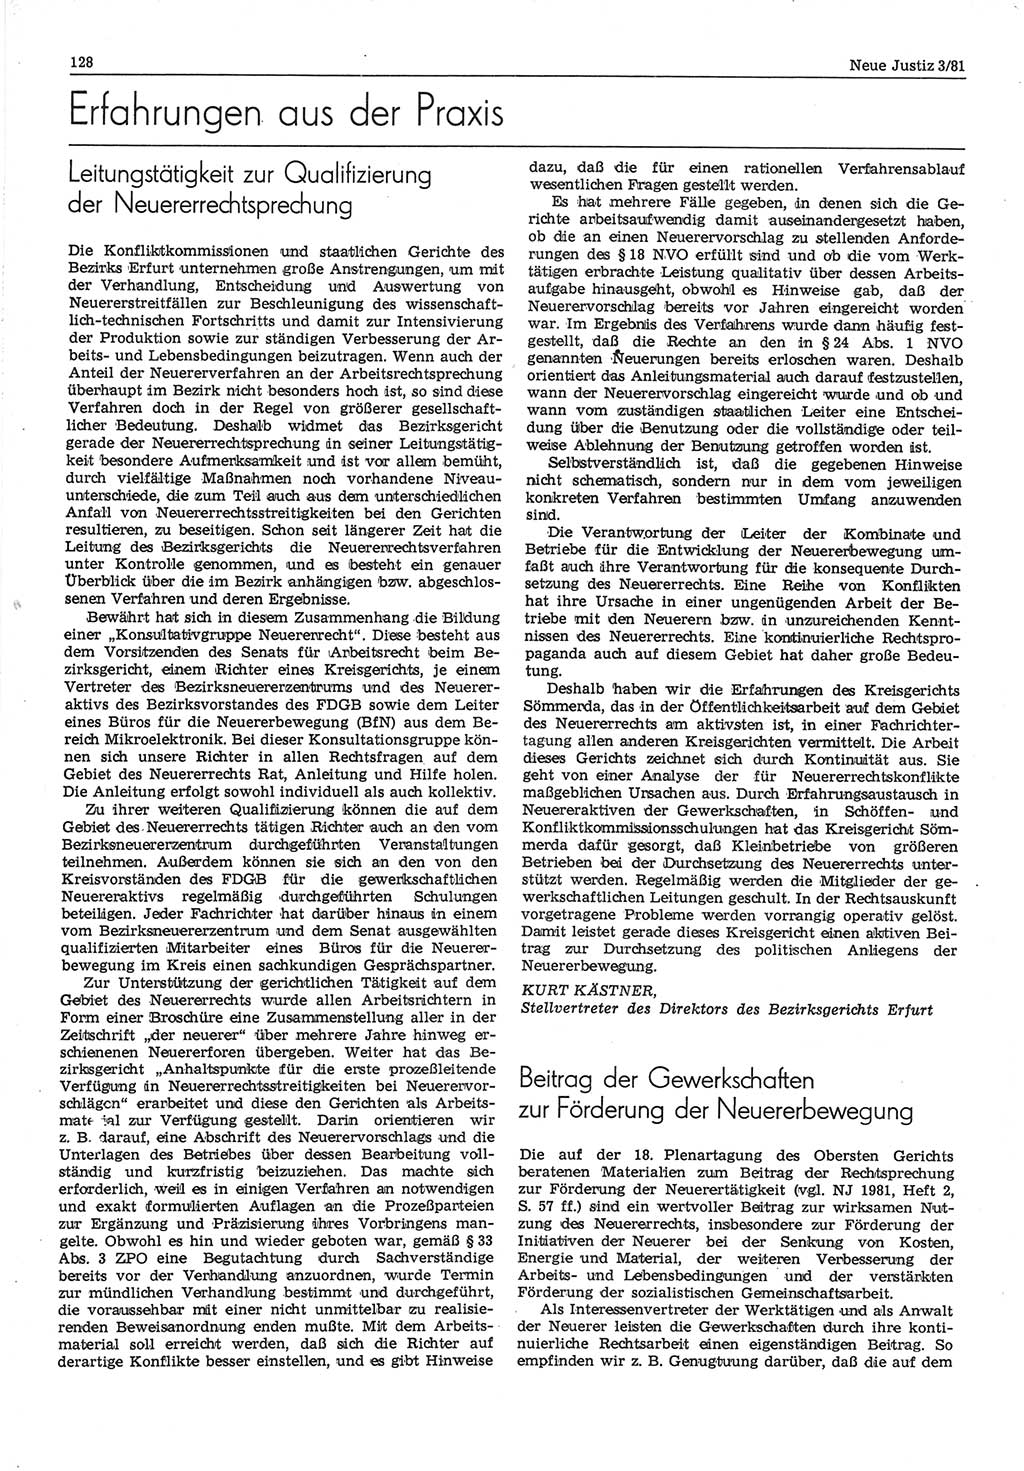 Neue Justiz (NJ), Zeitschrift für sozialistisches Recht und Gesetzlichkeit [Deutsche Demokratische Republik (DDR)], 35. Jahrgang 1981, Seite 128 (NJ DDR 1981, S. 128)